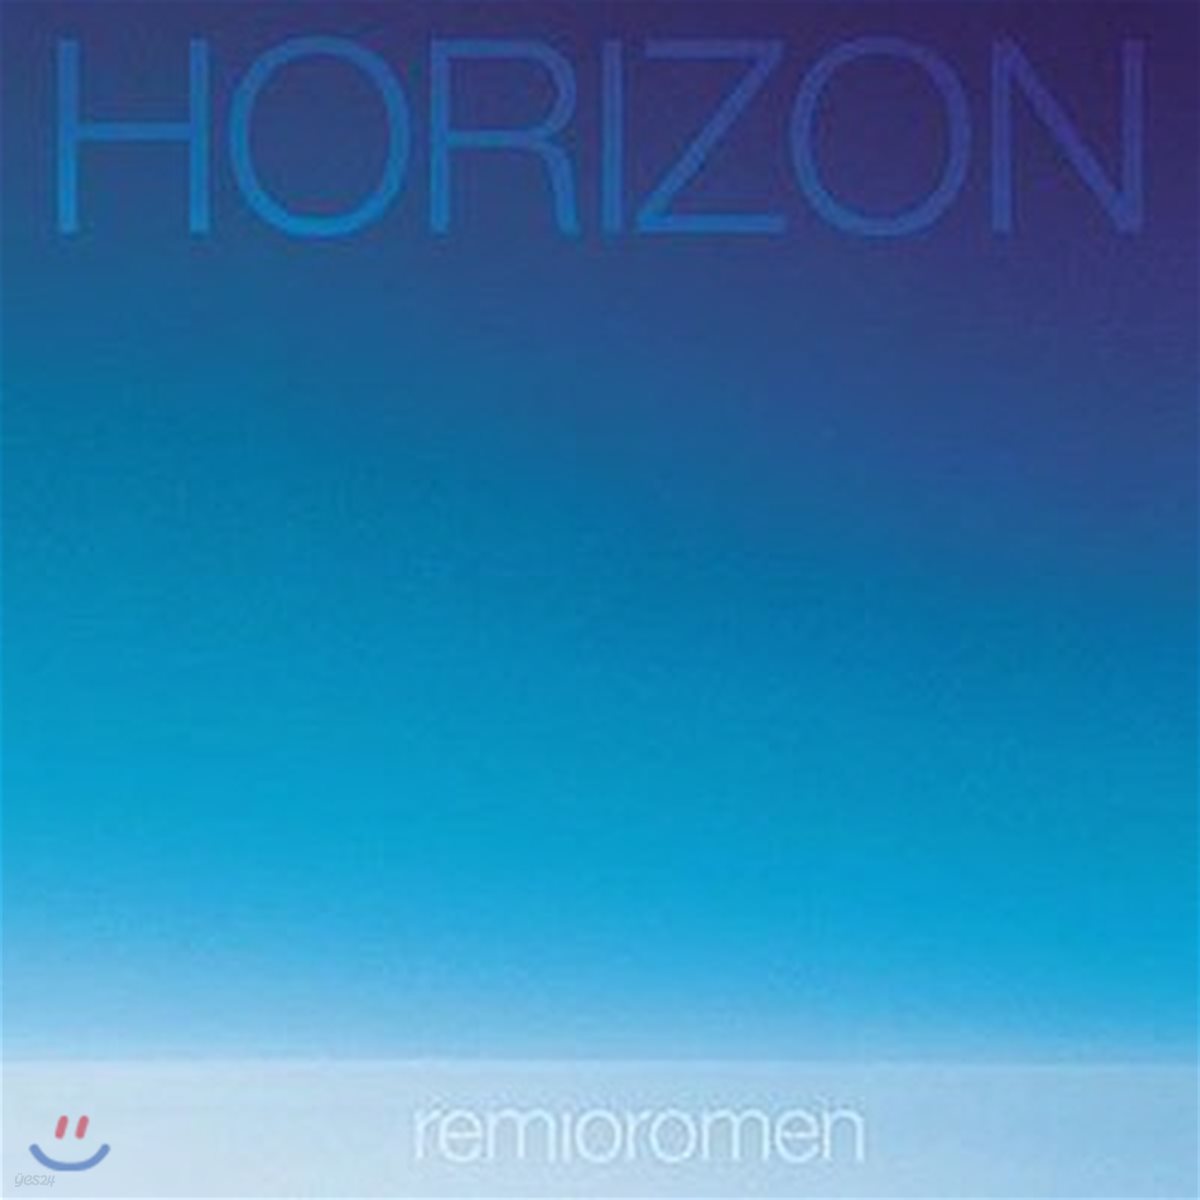 [중고] Remioromen / Horizon (일본반/쥬얼케이스)